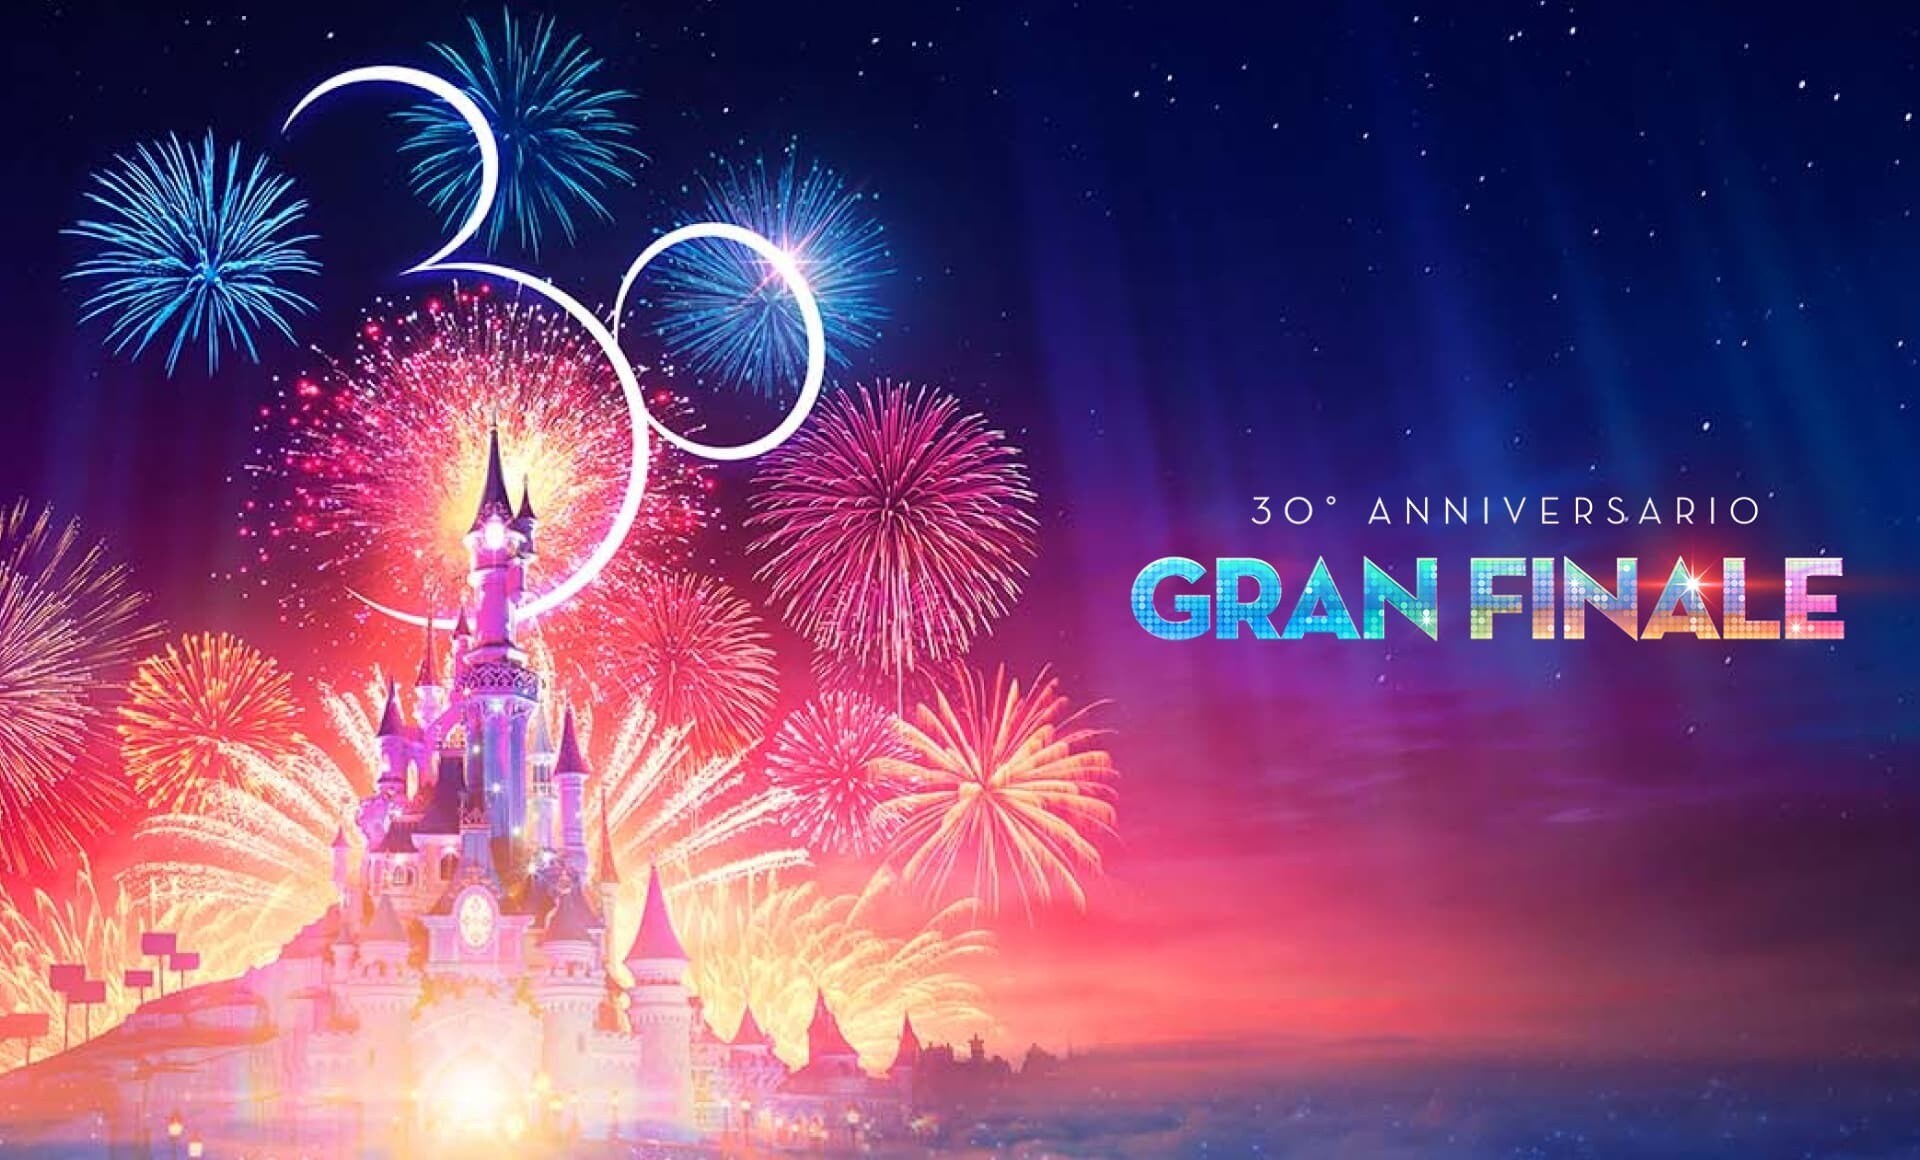 Castello di Disneyland Paris al tramonto con fuochi artificiali e logo 30° anniversario "Gran Finale"